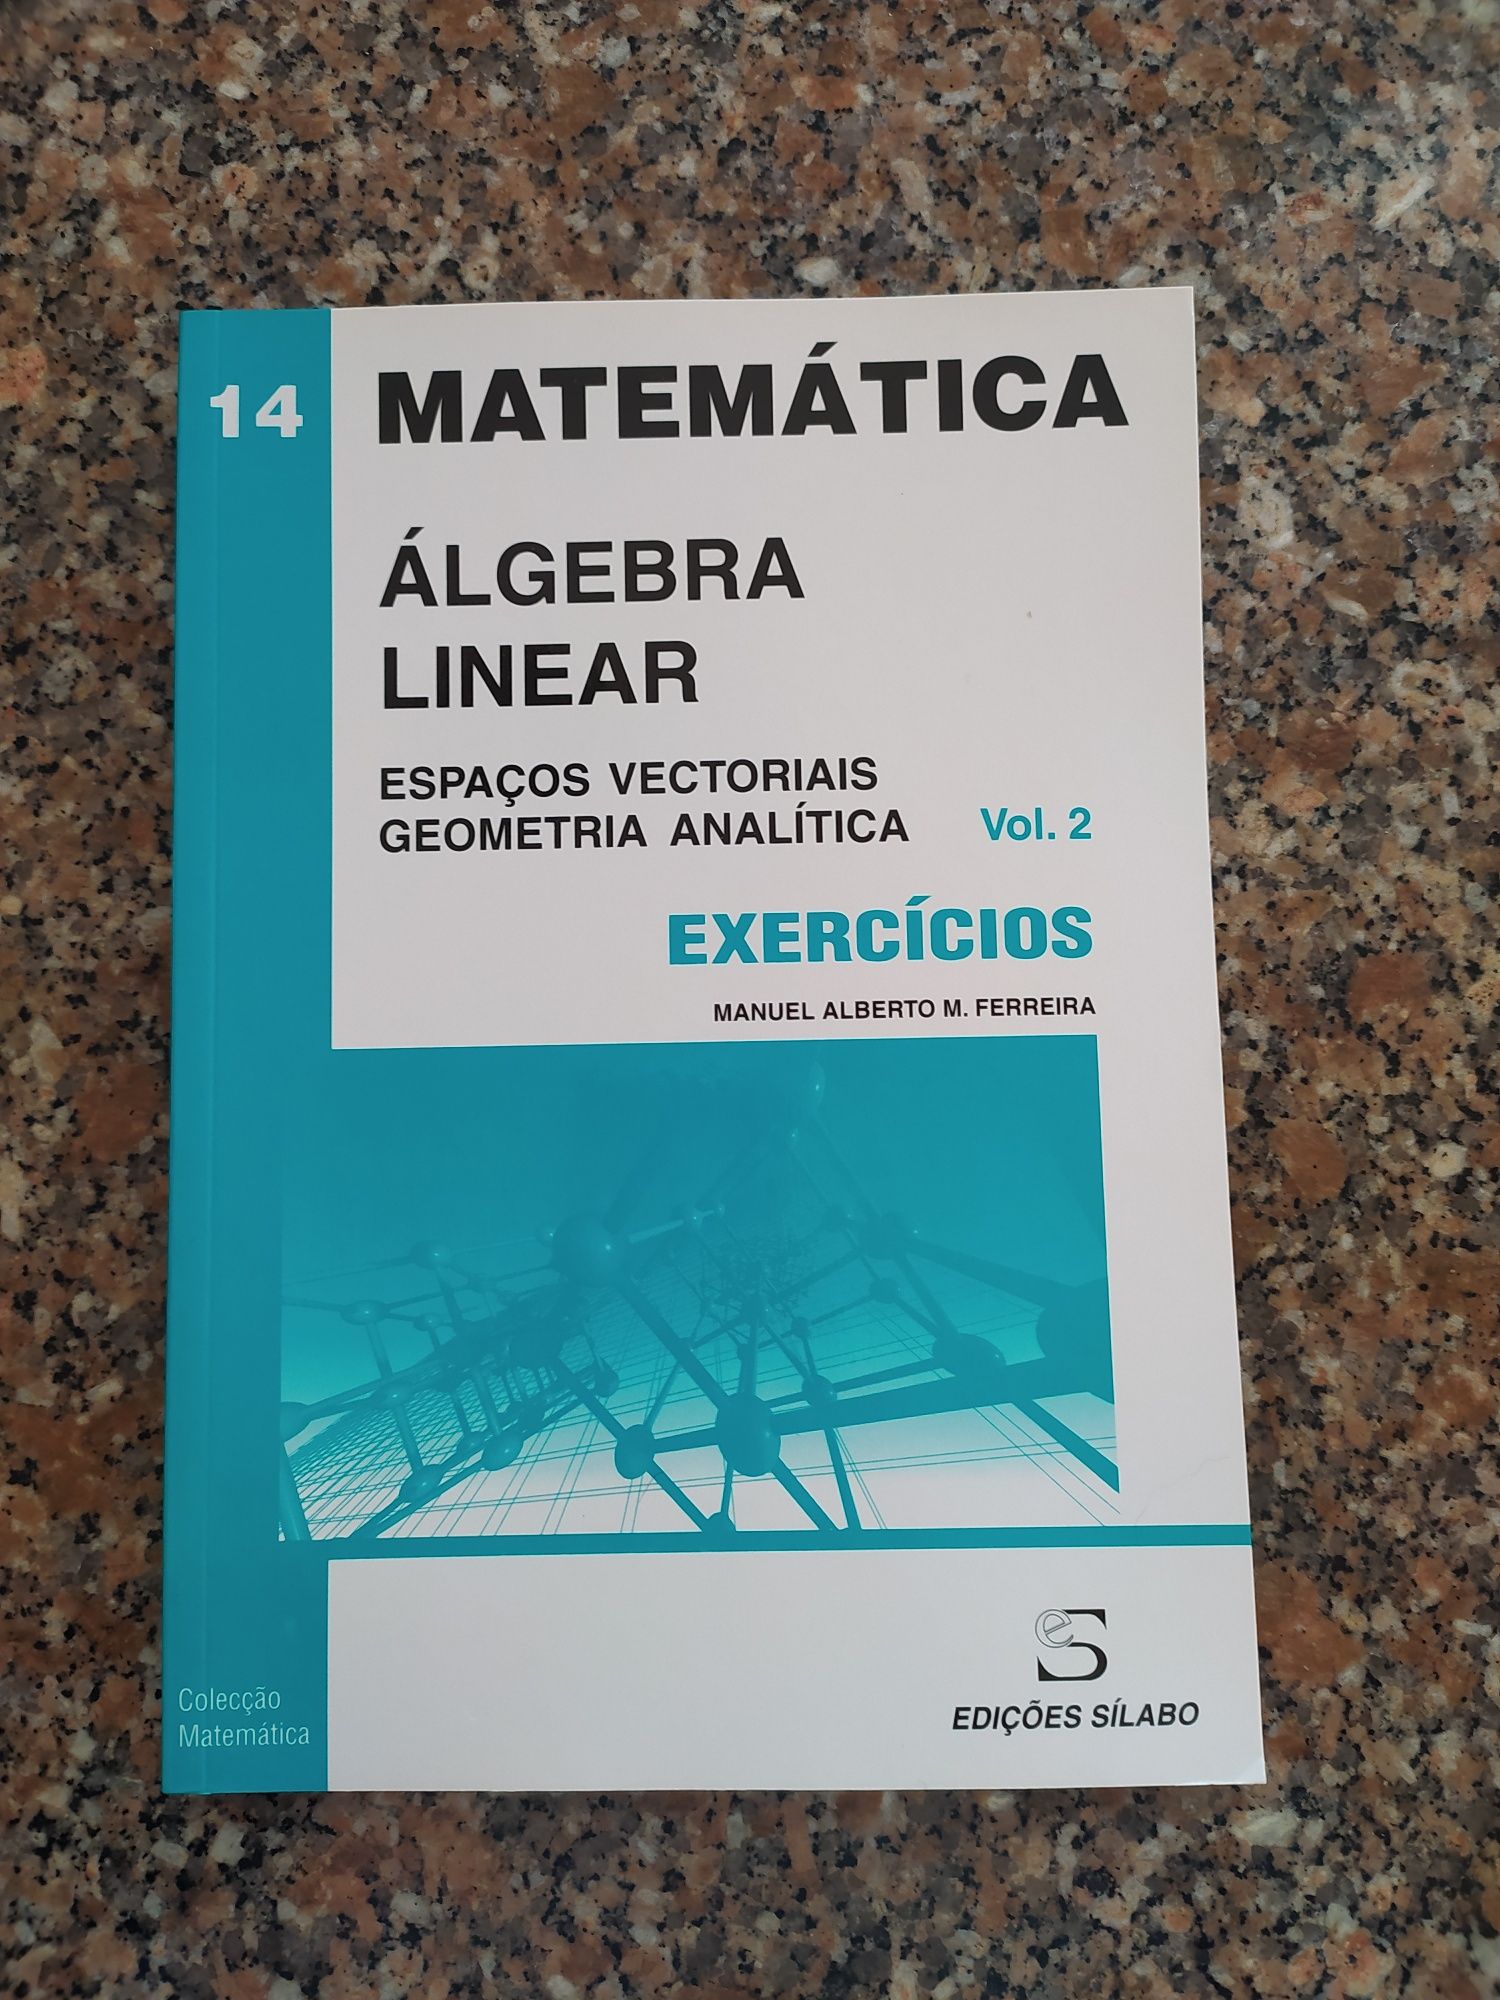 [NOVO] Álgebra Linear e Geometria Analítica - Exercícios